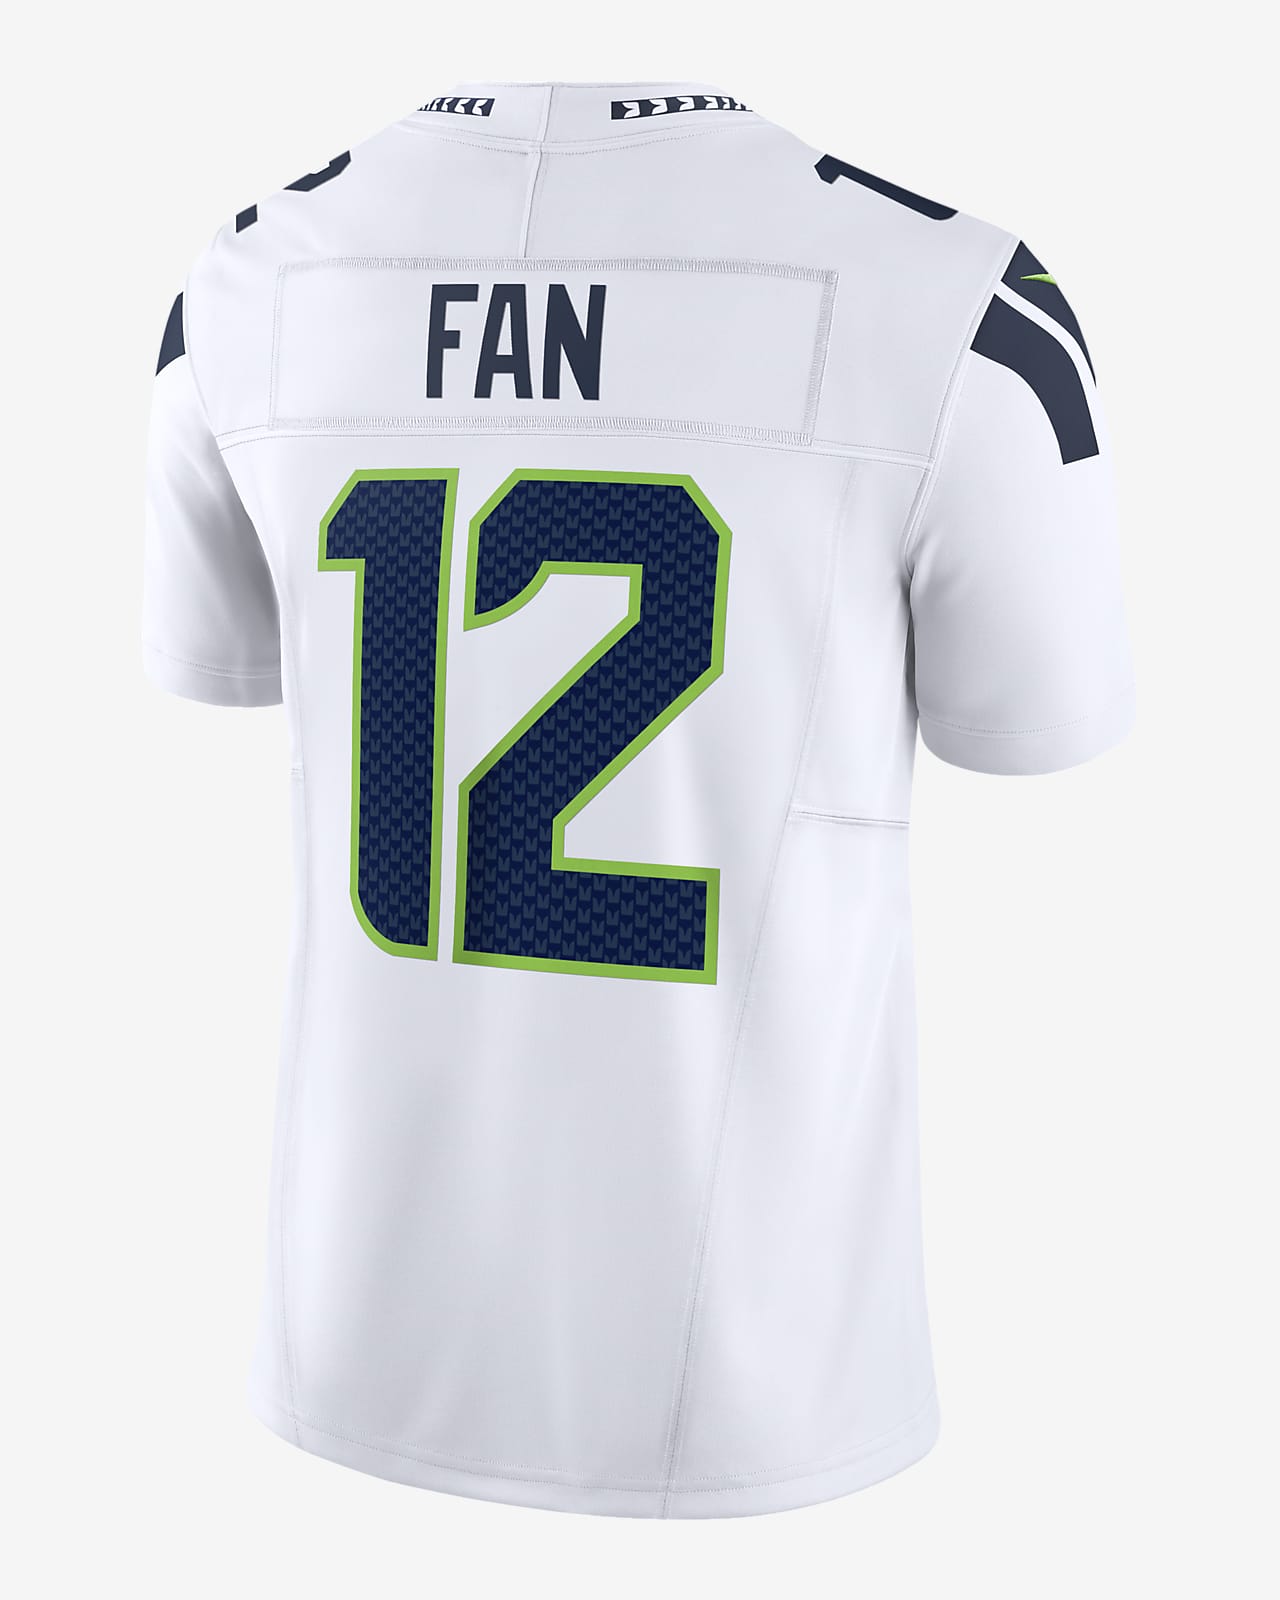 12th Fan Seattle Seahawks Men's Nike Dri-FIT NFL Limited Football Jersey